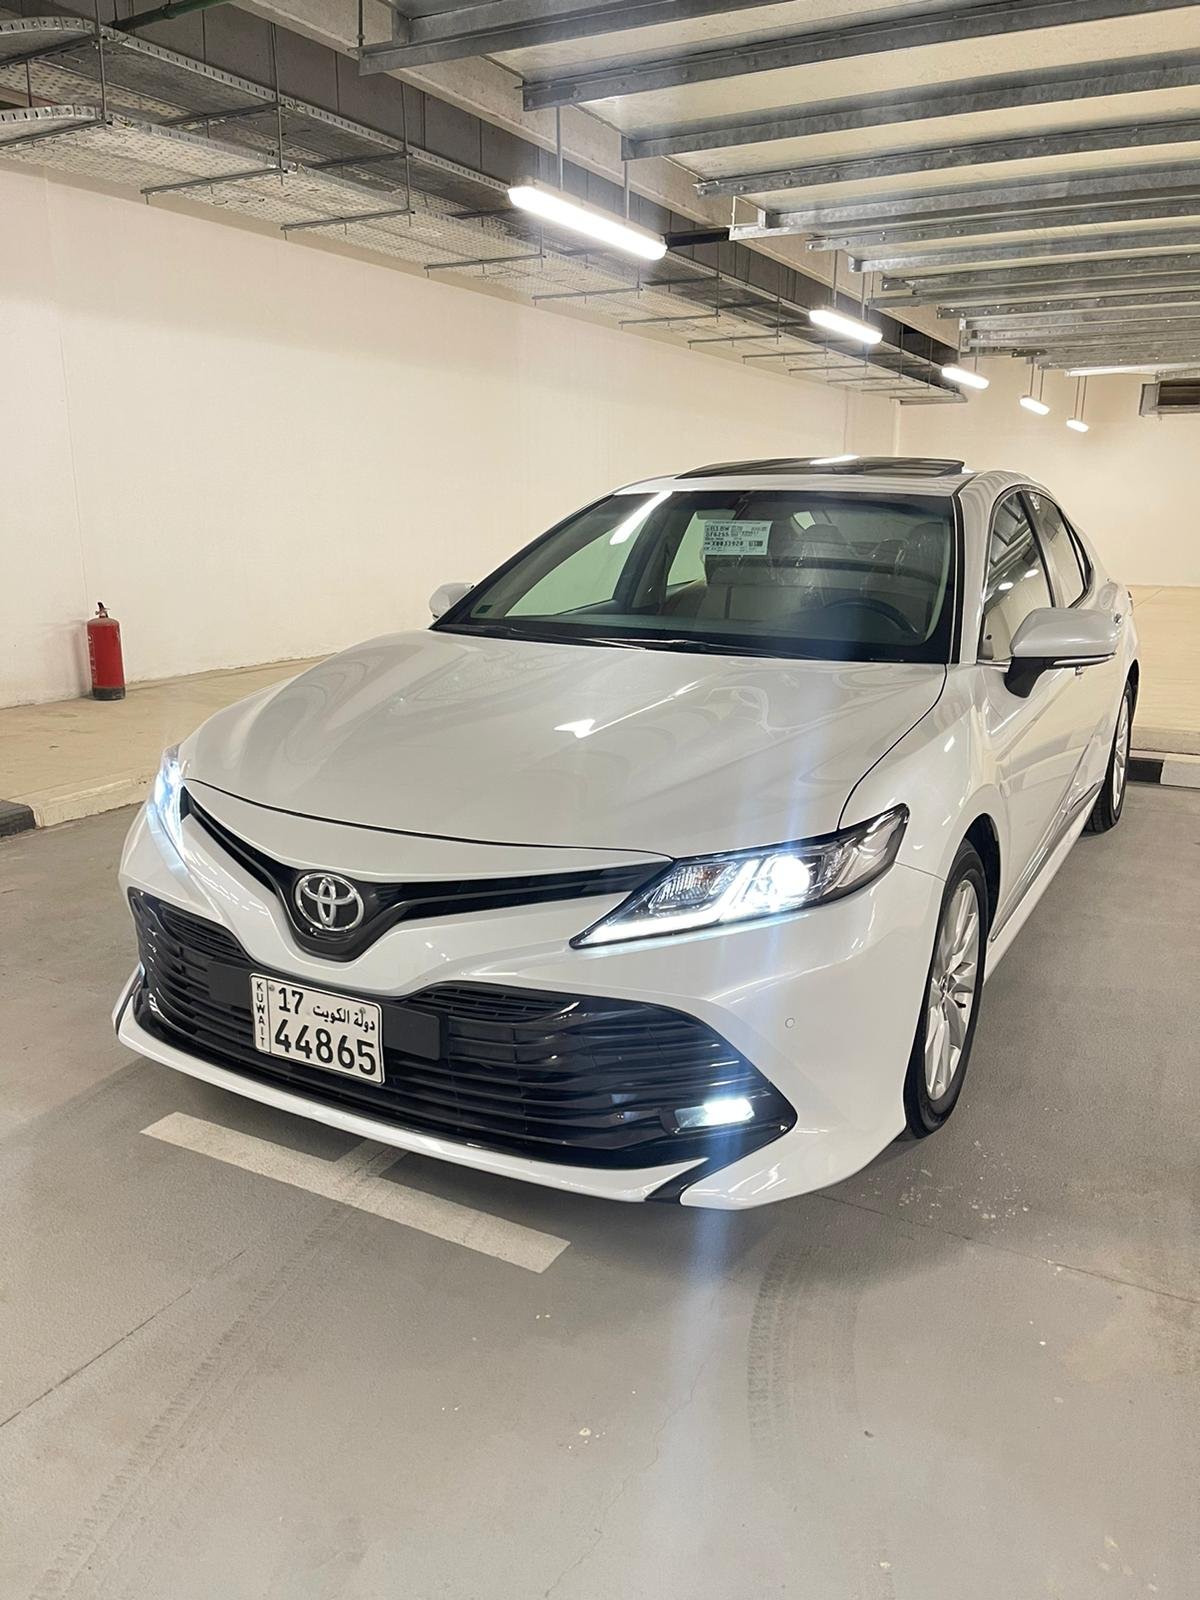 Toyota camry 2019 تويوتا كامري ٢٠١٩1.jpeg